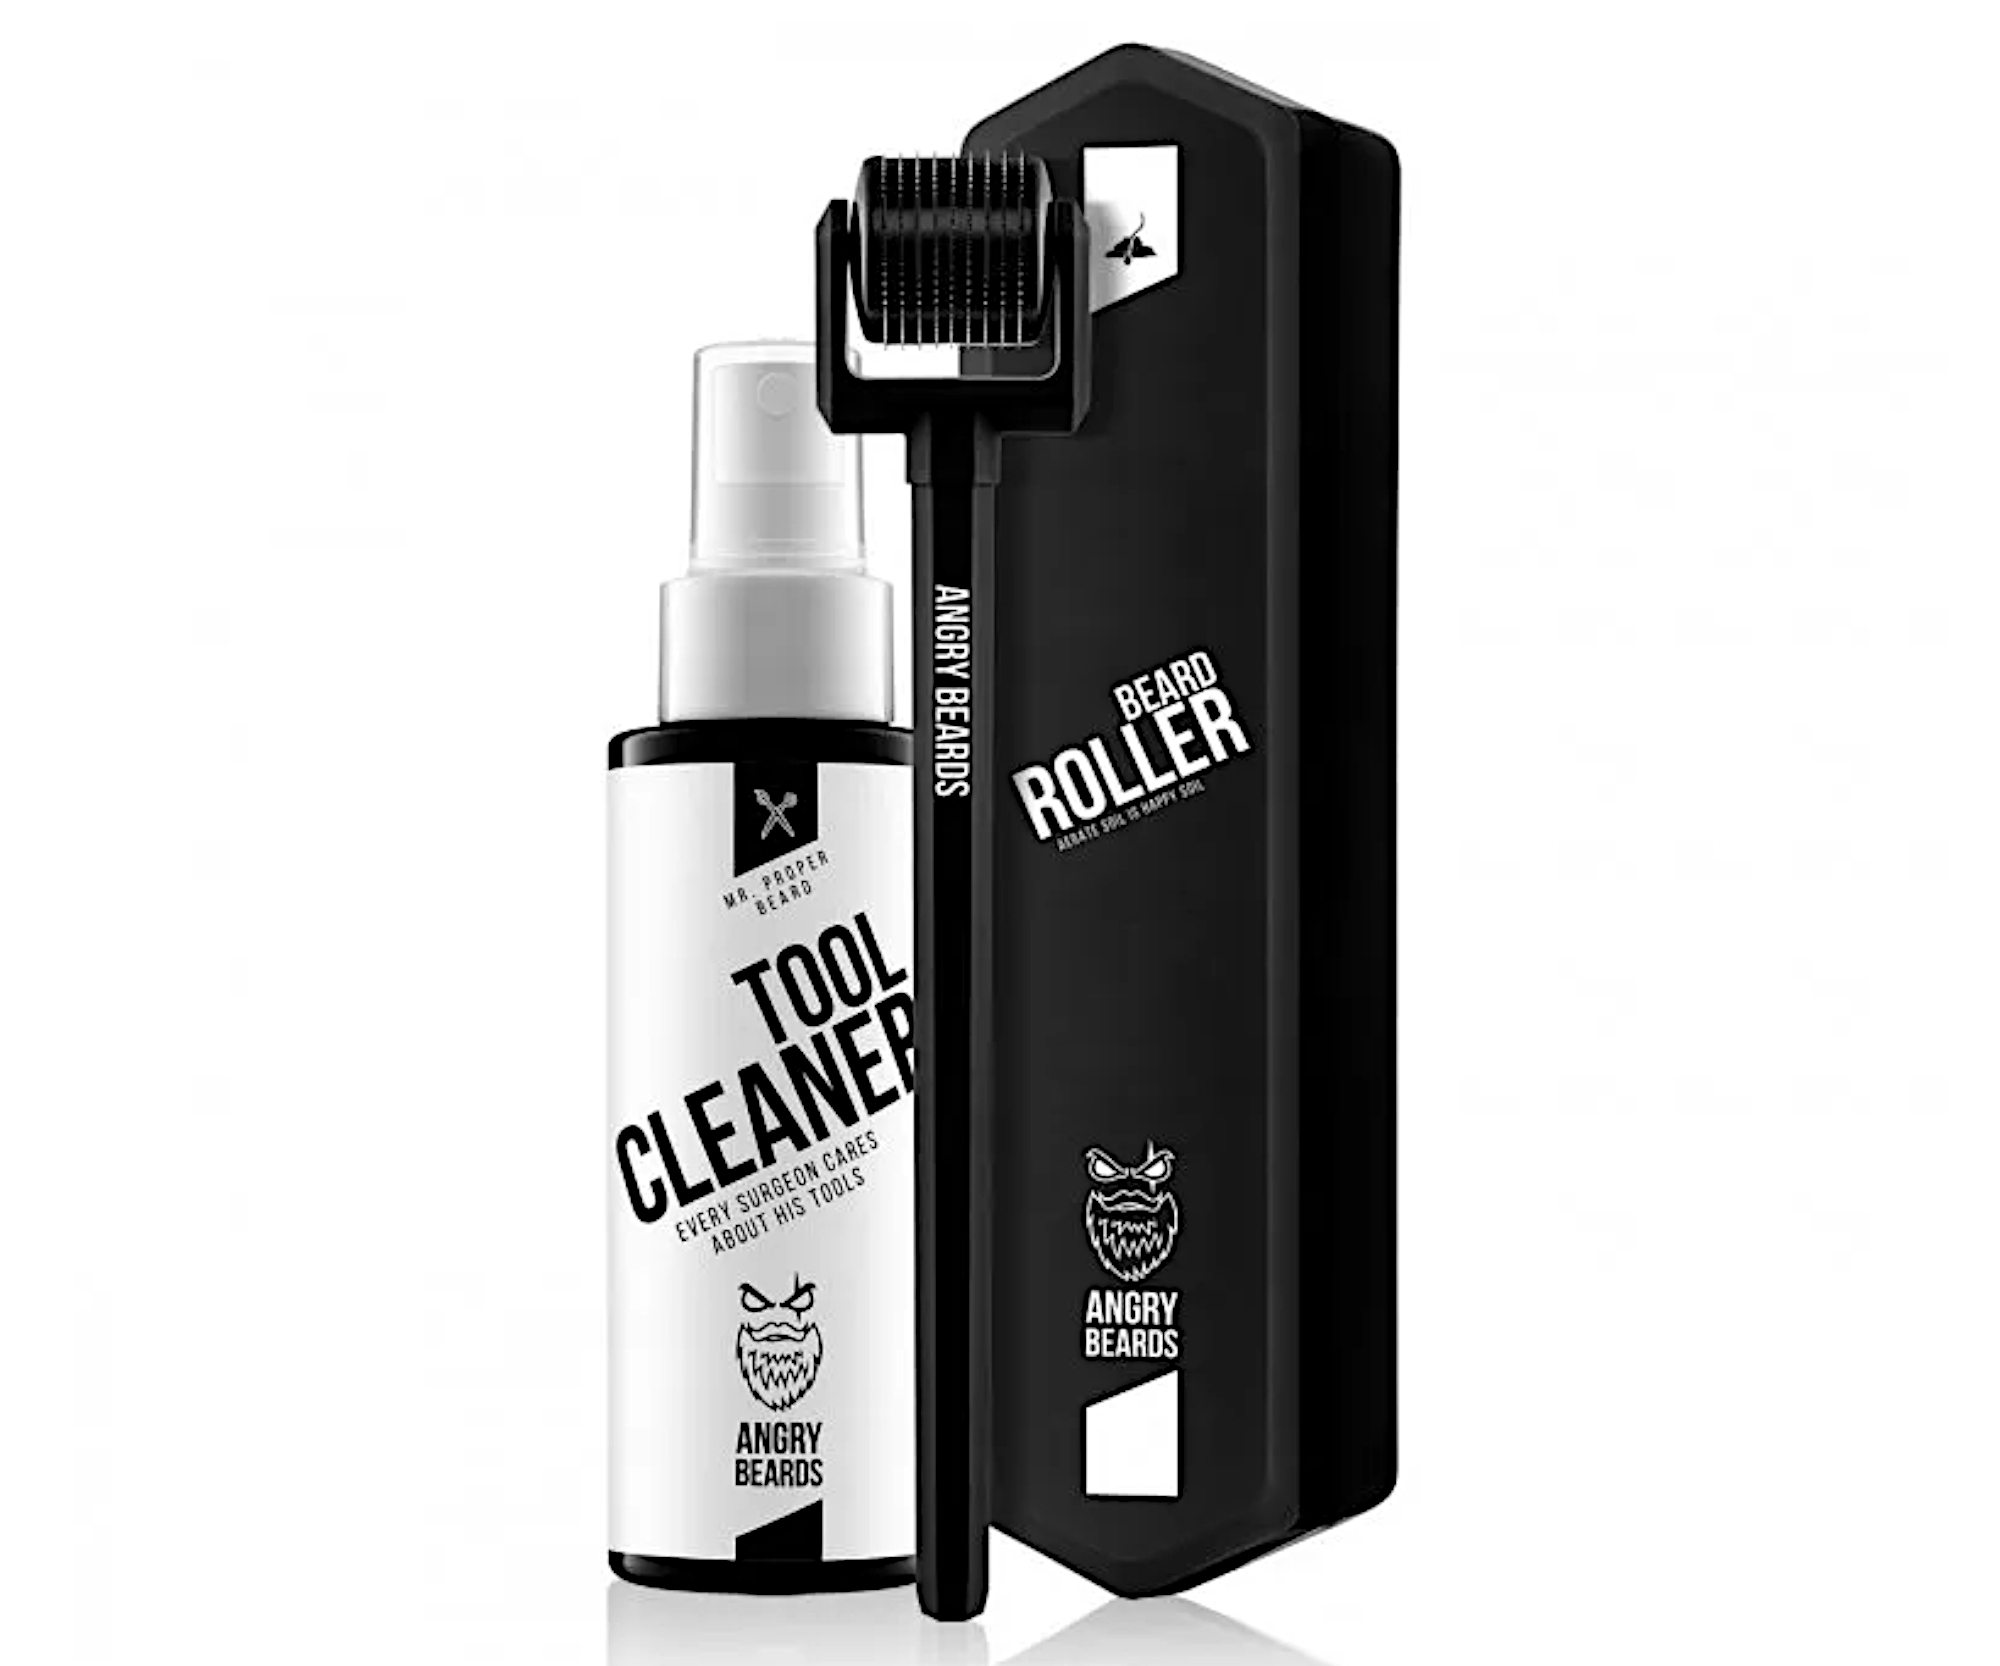 Masážní váleček pro podporu růstu vousů Angry Beard Beard Roller + čistící sprej Tool Cleaner 50 ml (GR-ROLL, GEAR-ROLLER) + dárek zdarma